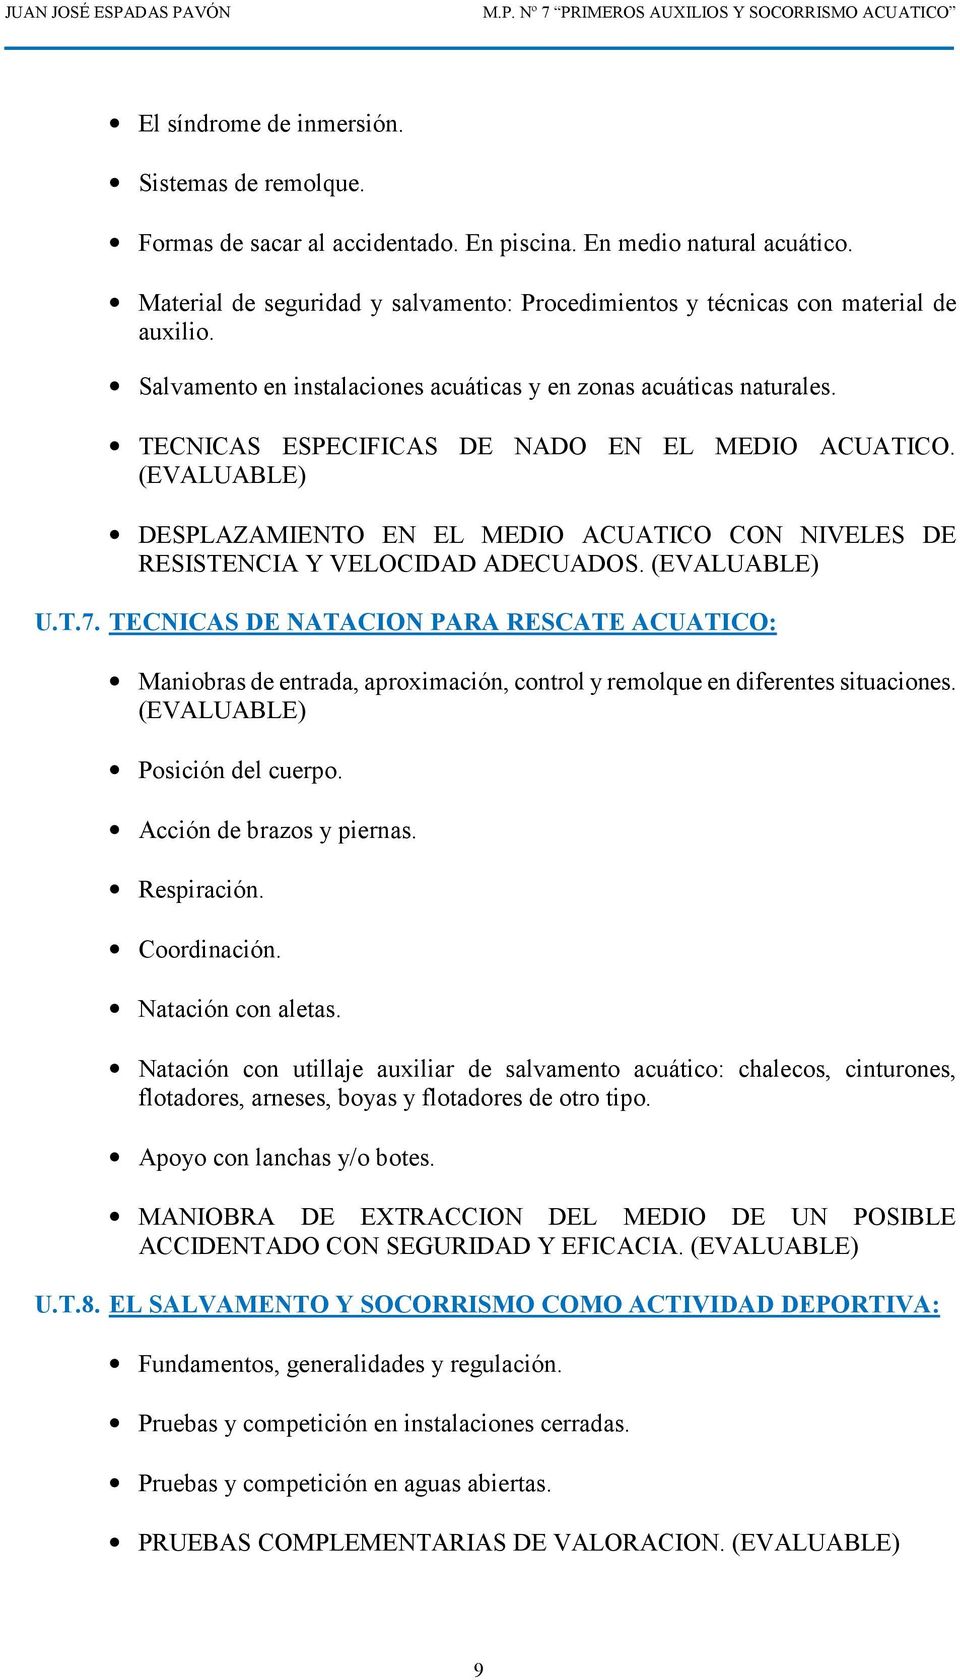 TECNICAS ESPECIFICAS DE NADO EN EL MEDIO ACUATICO. (EVALUABLE) DESPLAZAMIENTO EN EL MEDIO ACUATICO CON NIVELES DE RESISTENCIA Y VELOCIDAD ADECUADOS. (EVALUABLE) U.T.7.